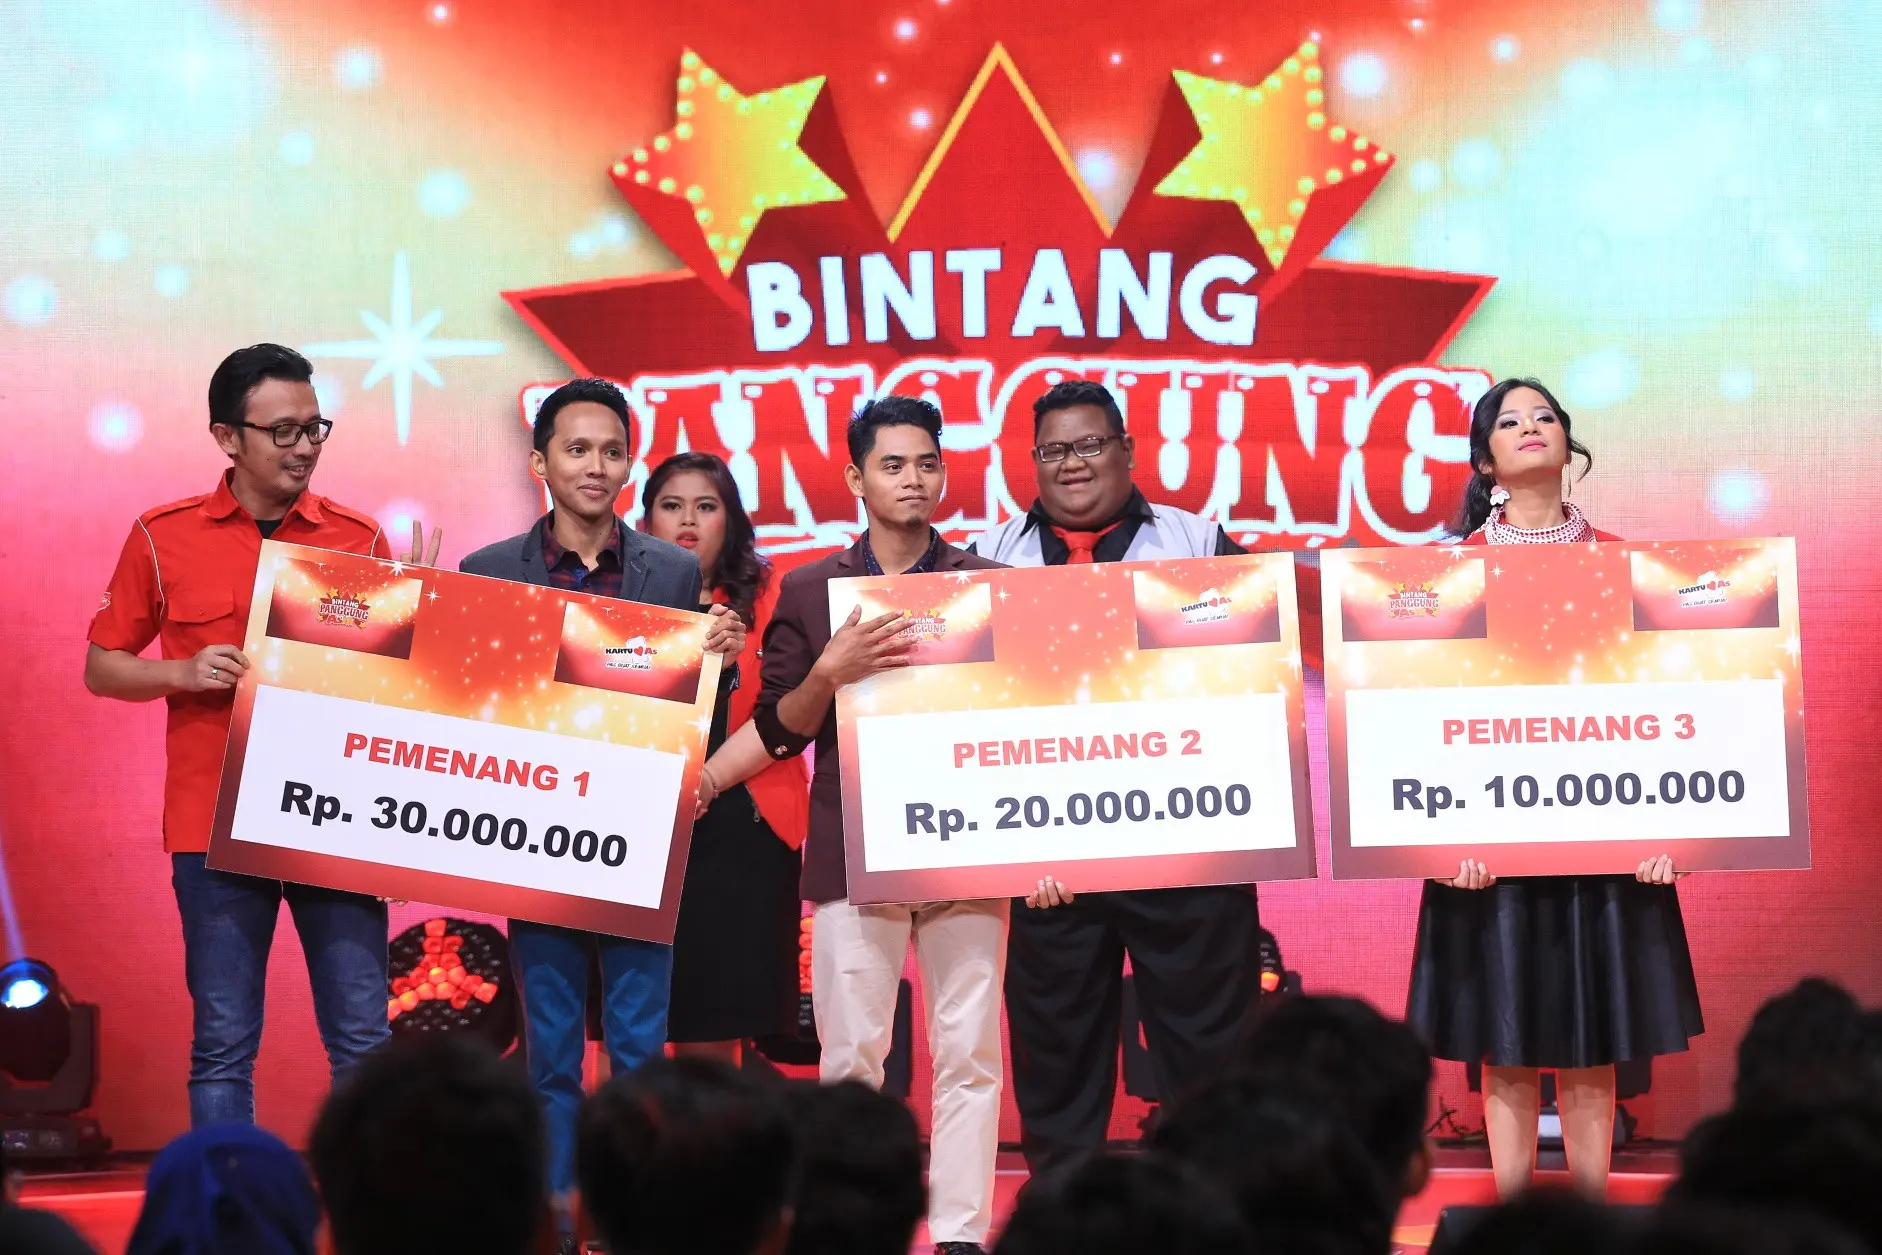 Freza asal Pekanbaru keluar sebagai pemenang di Bintang Panggung Asik 2017. (Adrian Putra/Bintang.com)